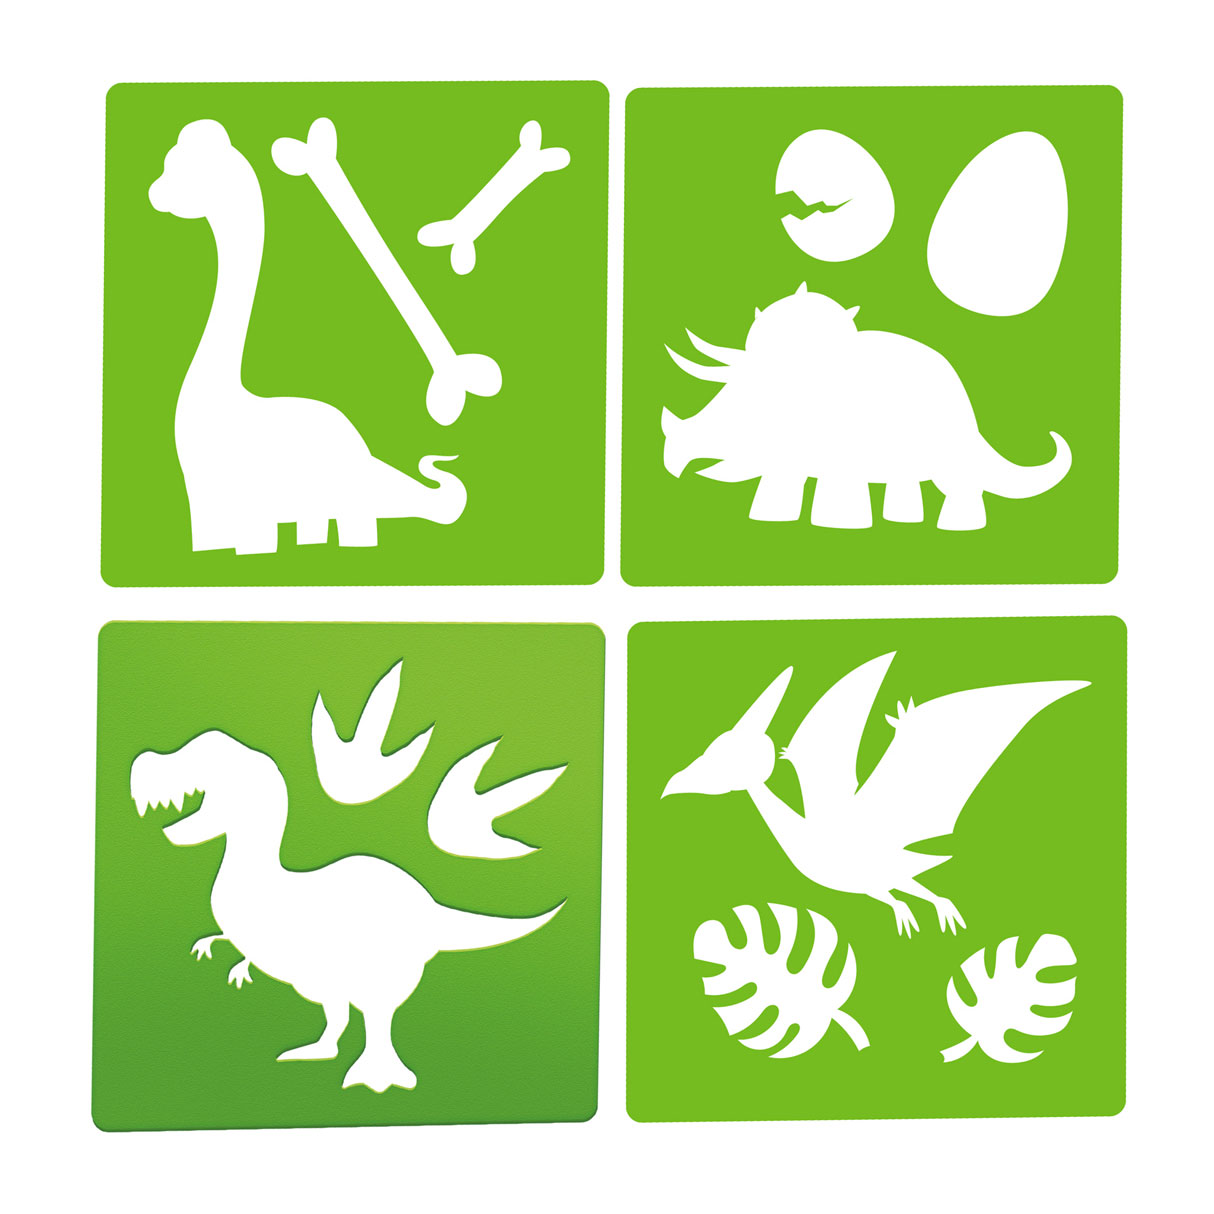 World of Dinosaurs Straßenkreide Dino mit Vorlagen, 10 Stück.